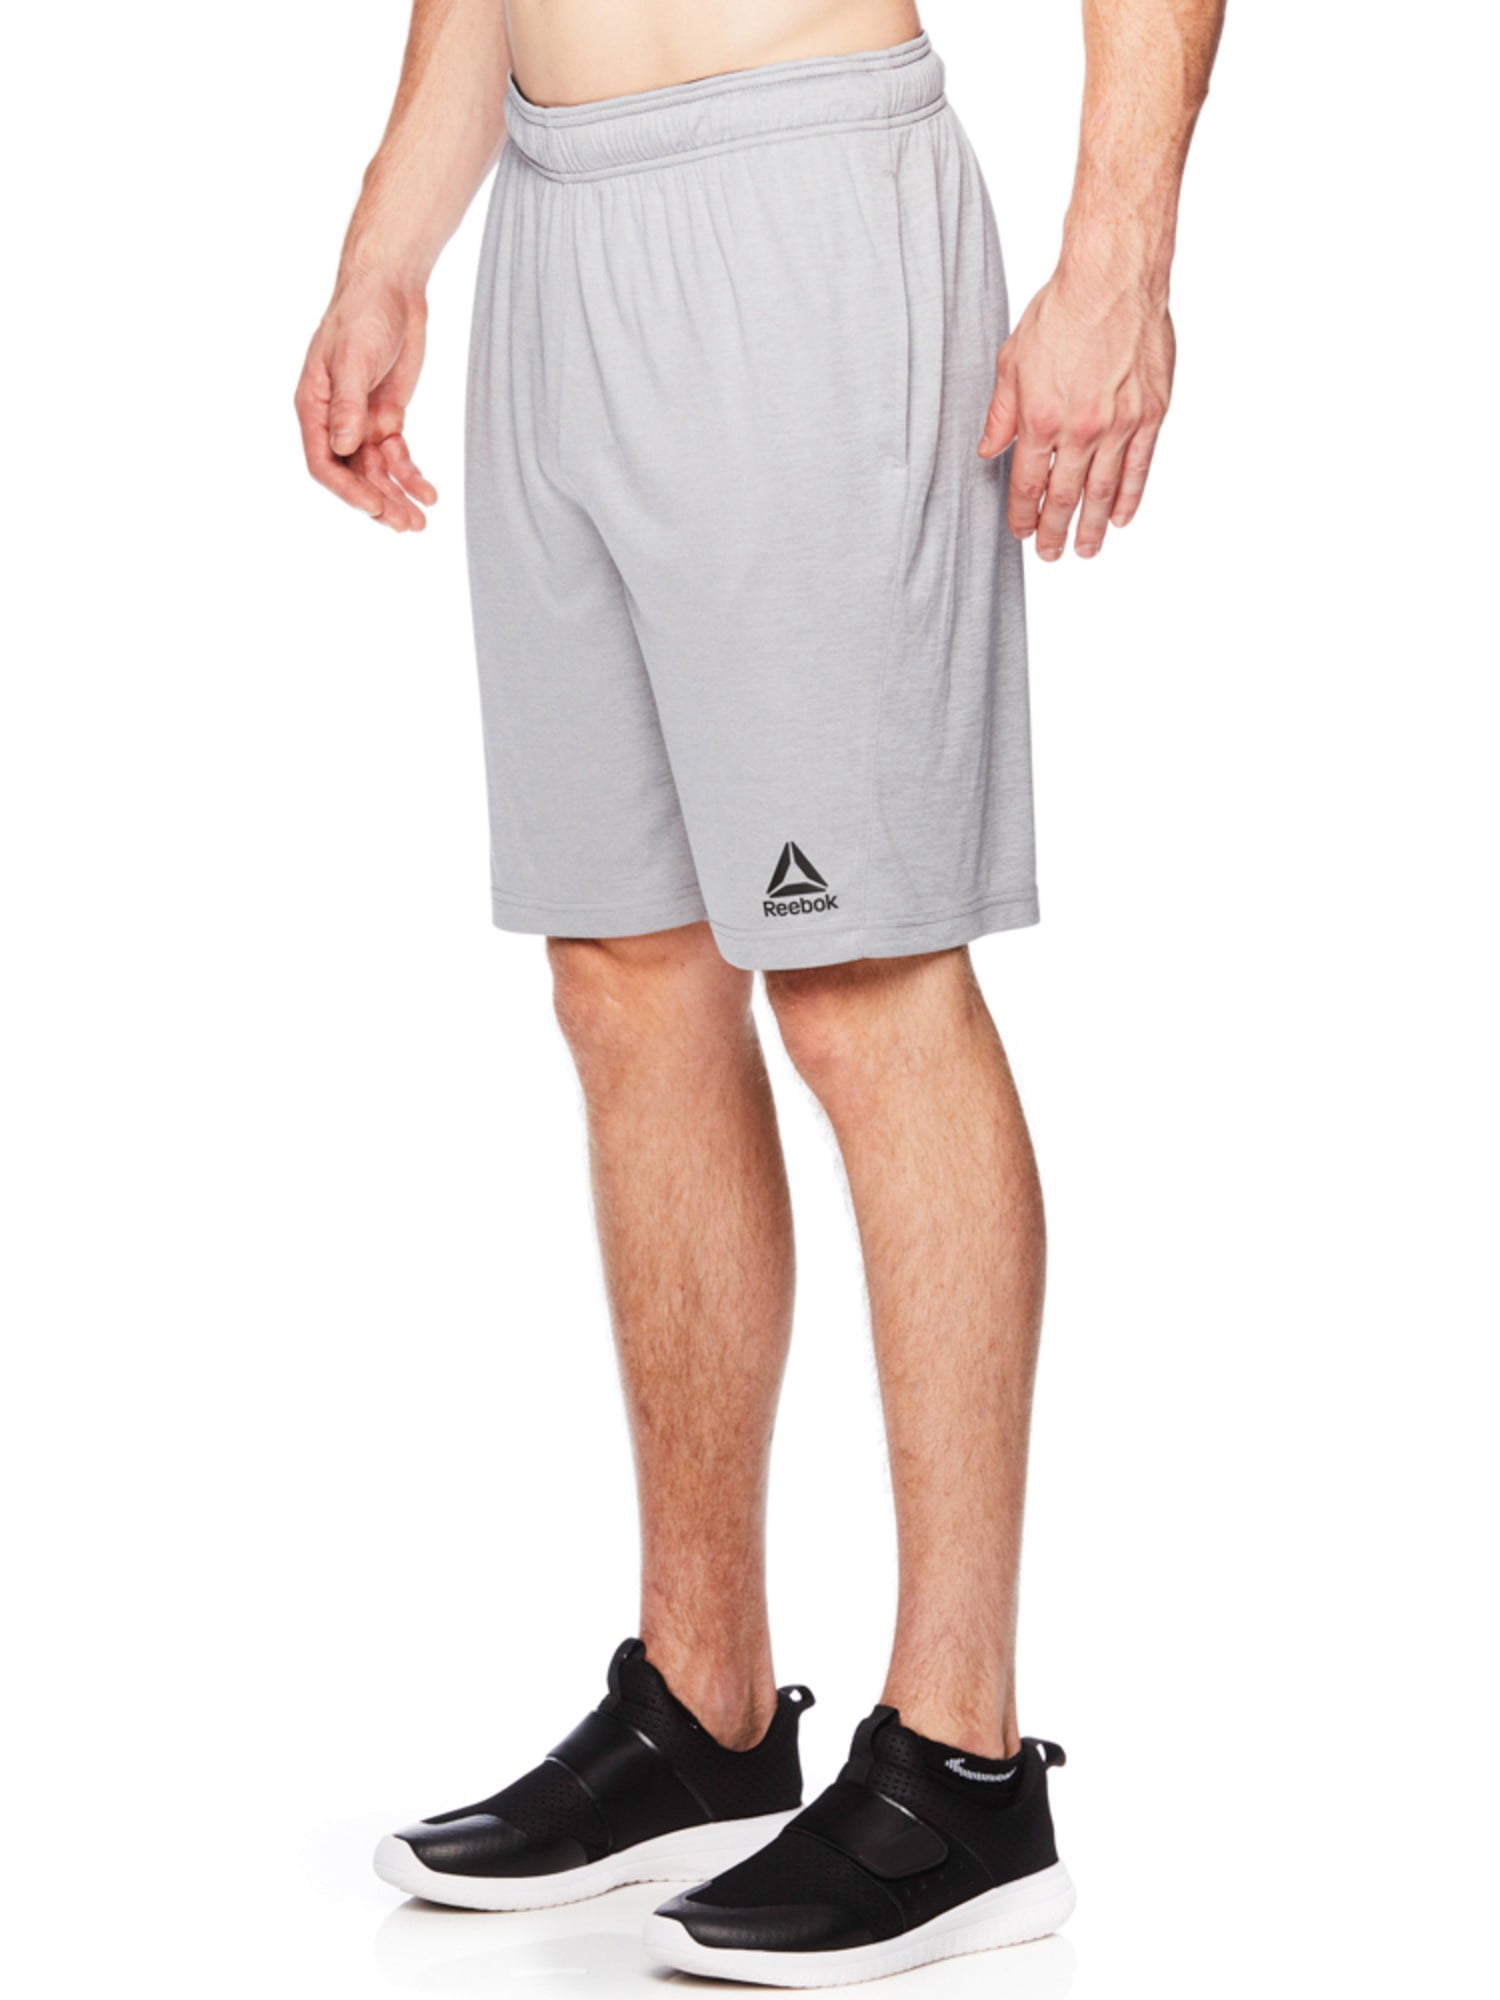 Reebok Men's Viber Shorts - Walmart.com